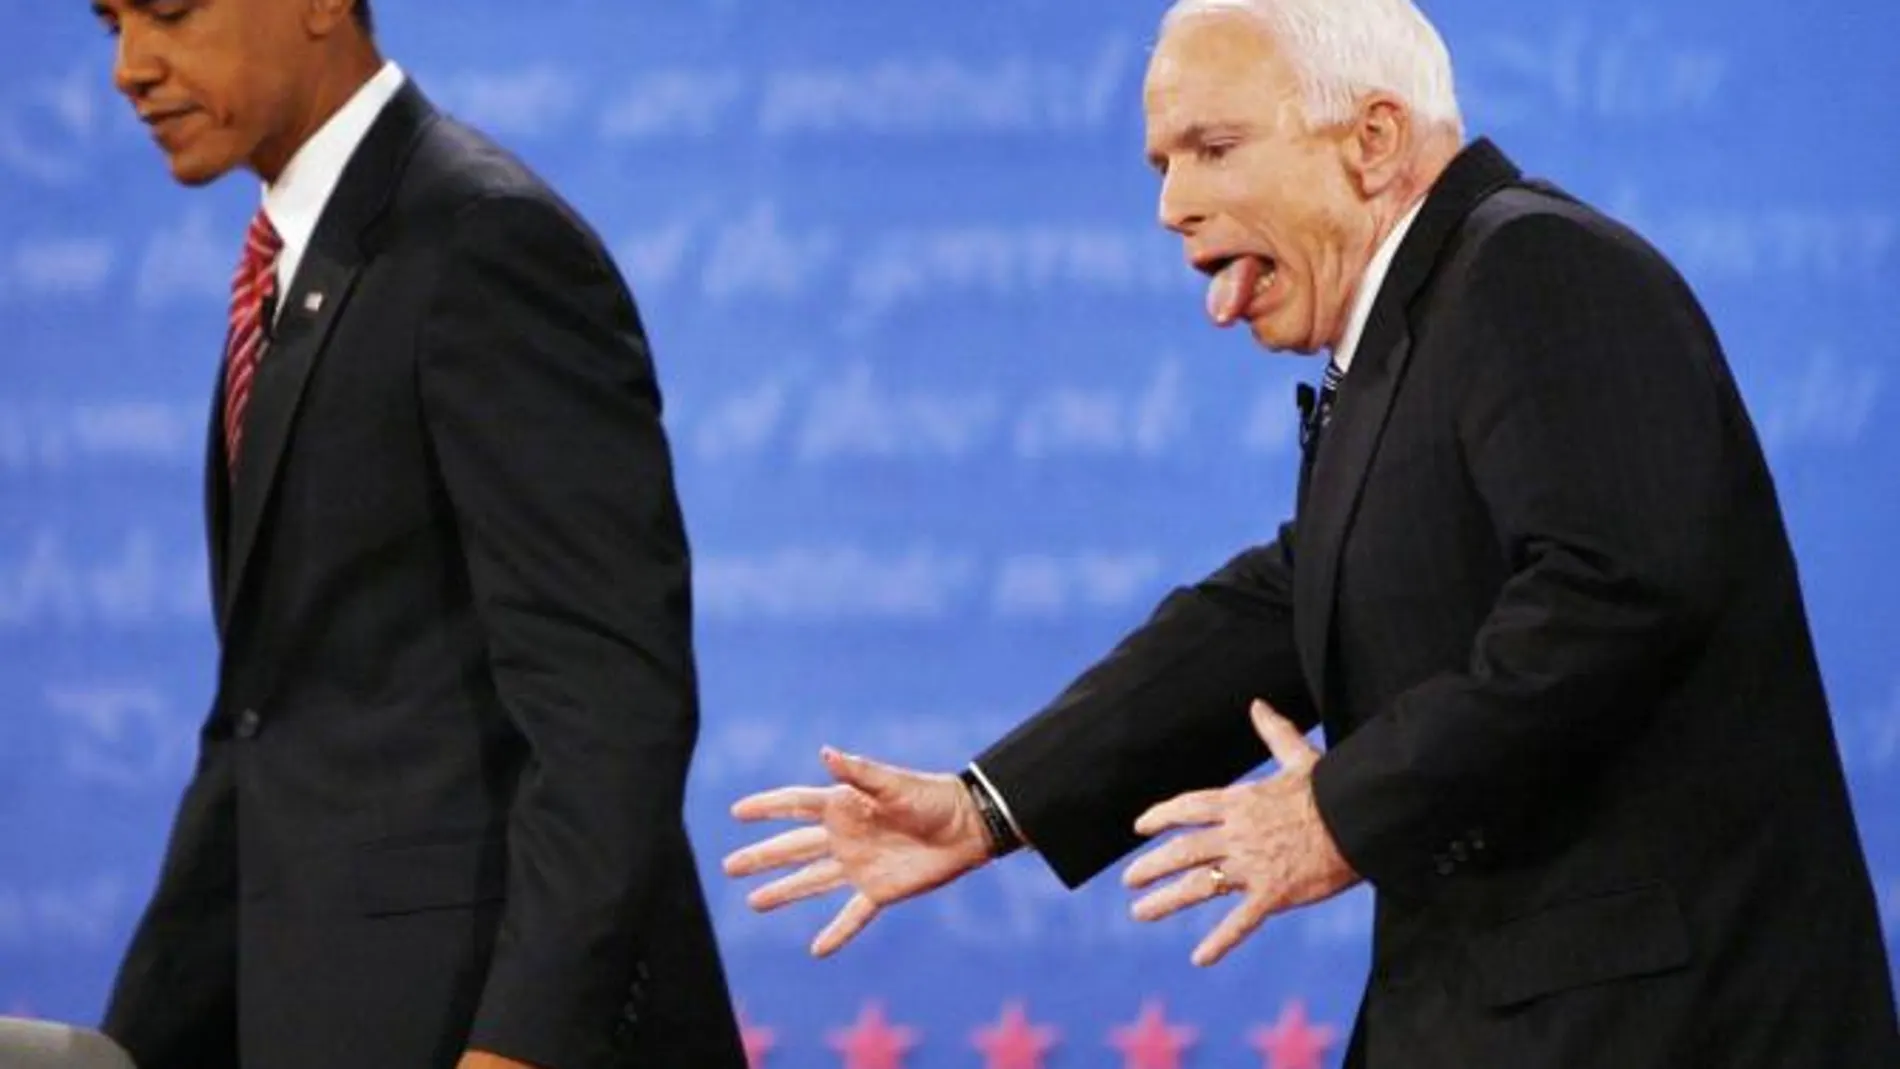 McCain contra obama. El veterano republicano no pudo hacer nada frente al carisma del candidato demócrata: la cámara captó un mal gesto, pero fue divertido. Era el 15 de octubre de 2008